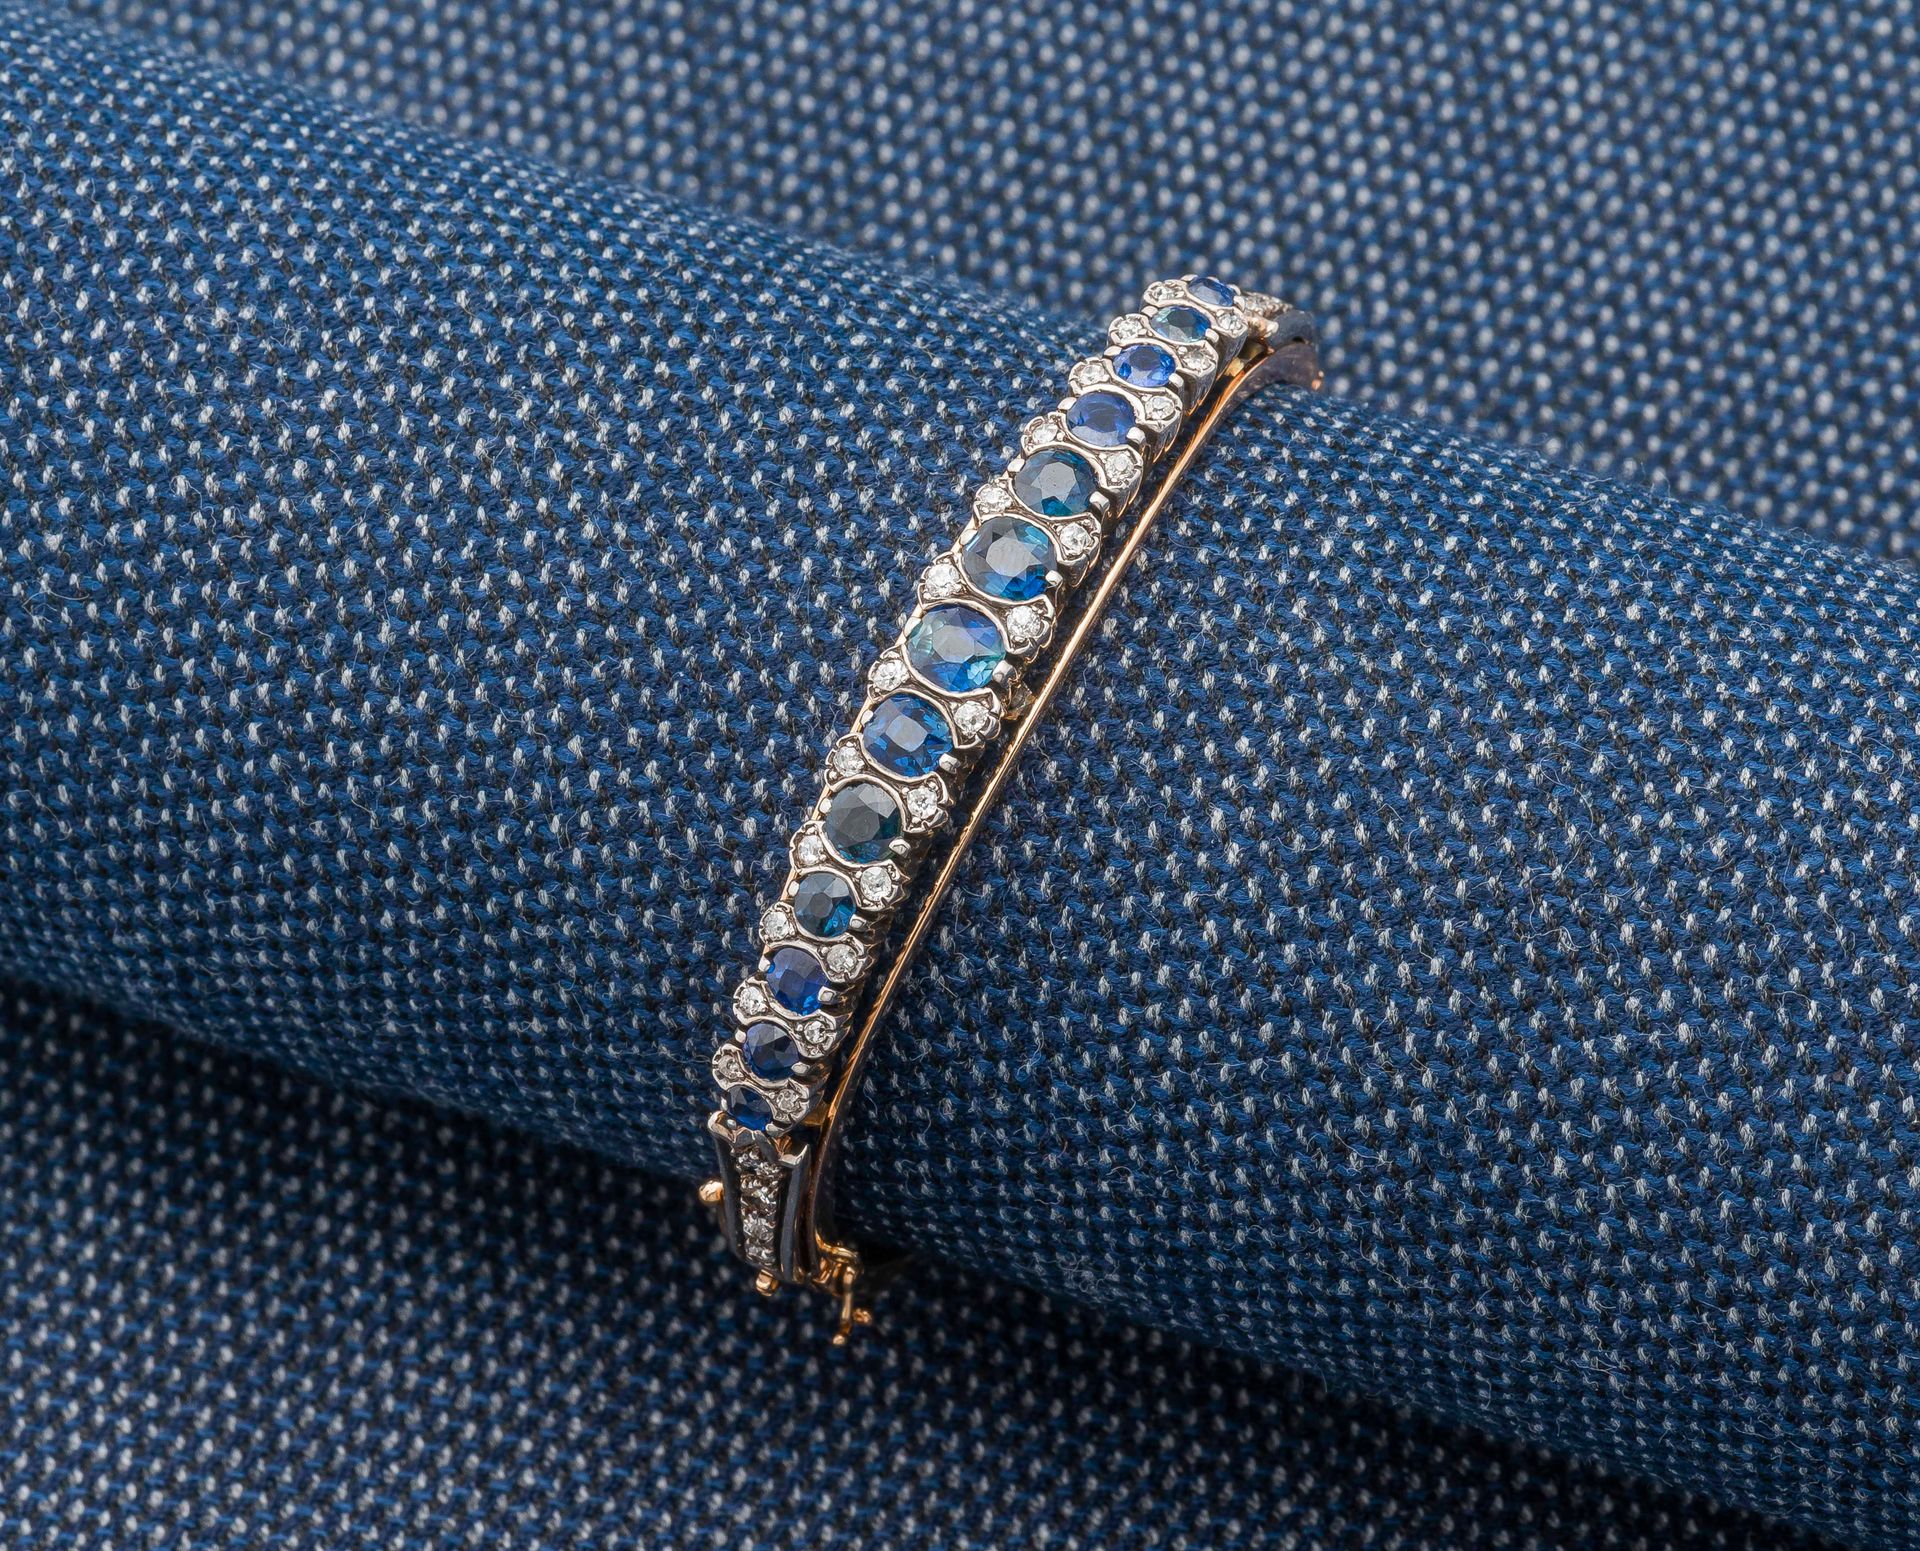 Null 18K（750 ‰）白金镂空手镯，镶嵌着一排弯曲的椭圆形和圆形蓝宝石以及小型老式切割钻石。法国作品，19世纪末。

直径：5.5厘米 毛重：22.1克